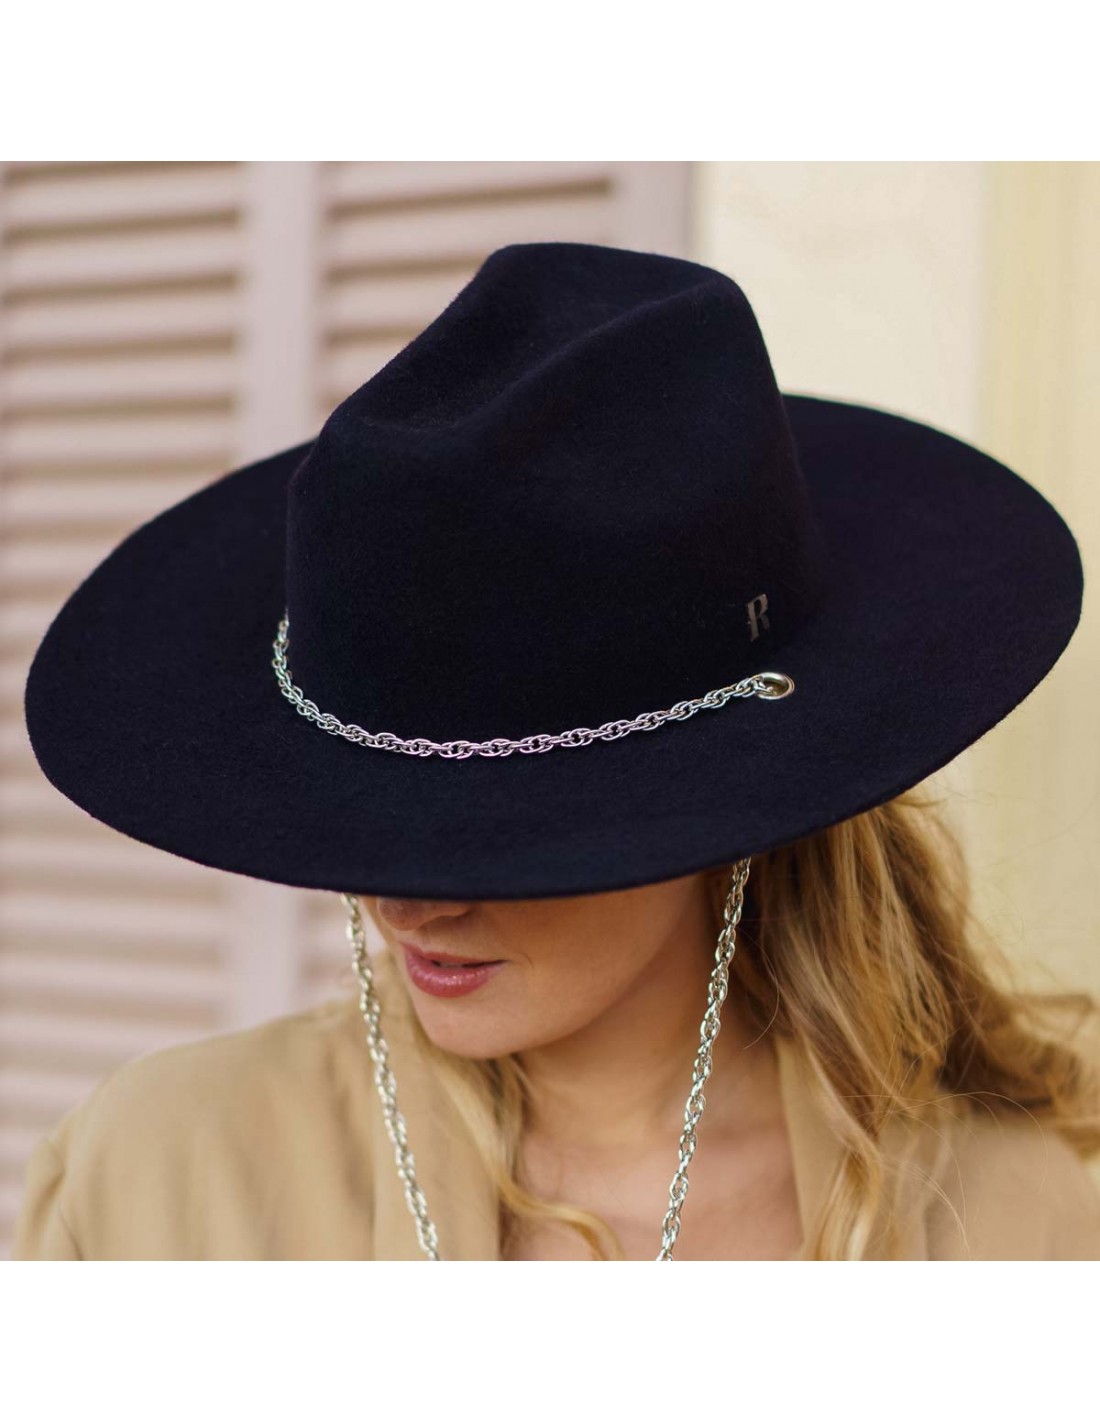 Sombrero Cowboy Mujer Azul Marino Cadena Plateada - Sombrero Vaquero Mujer